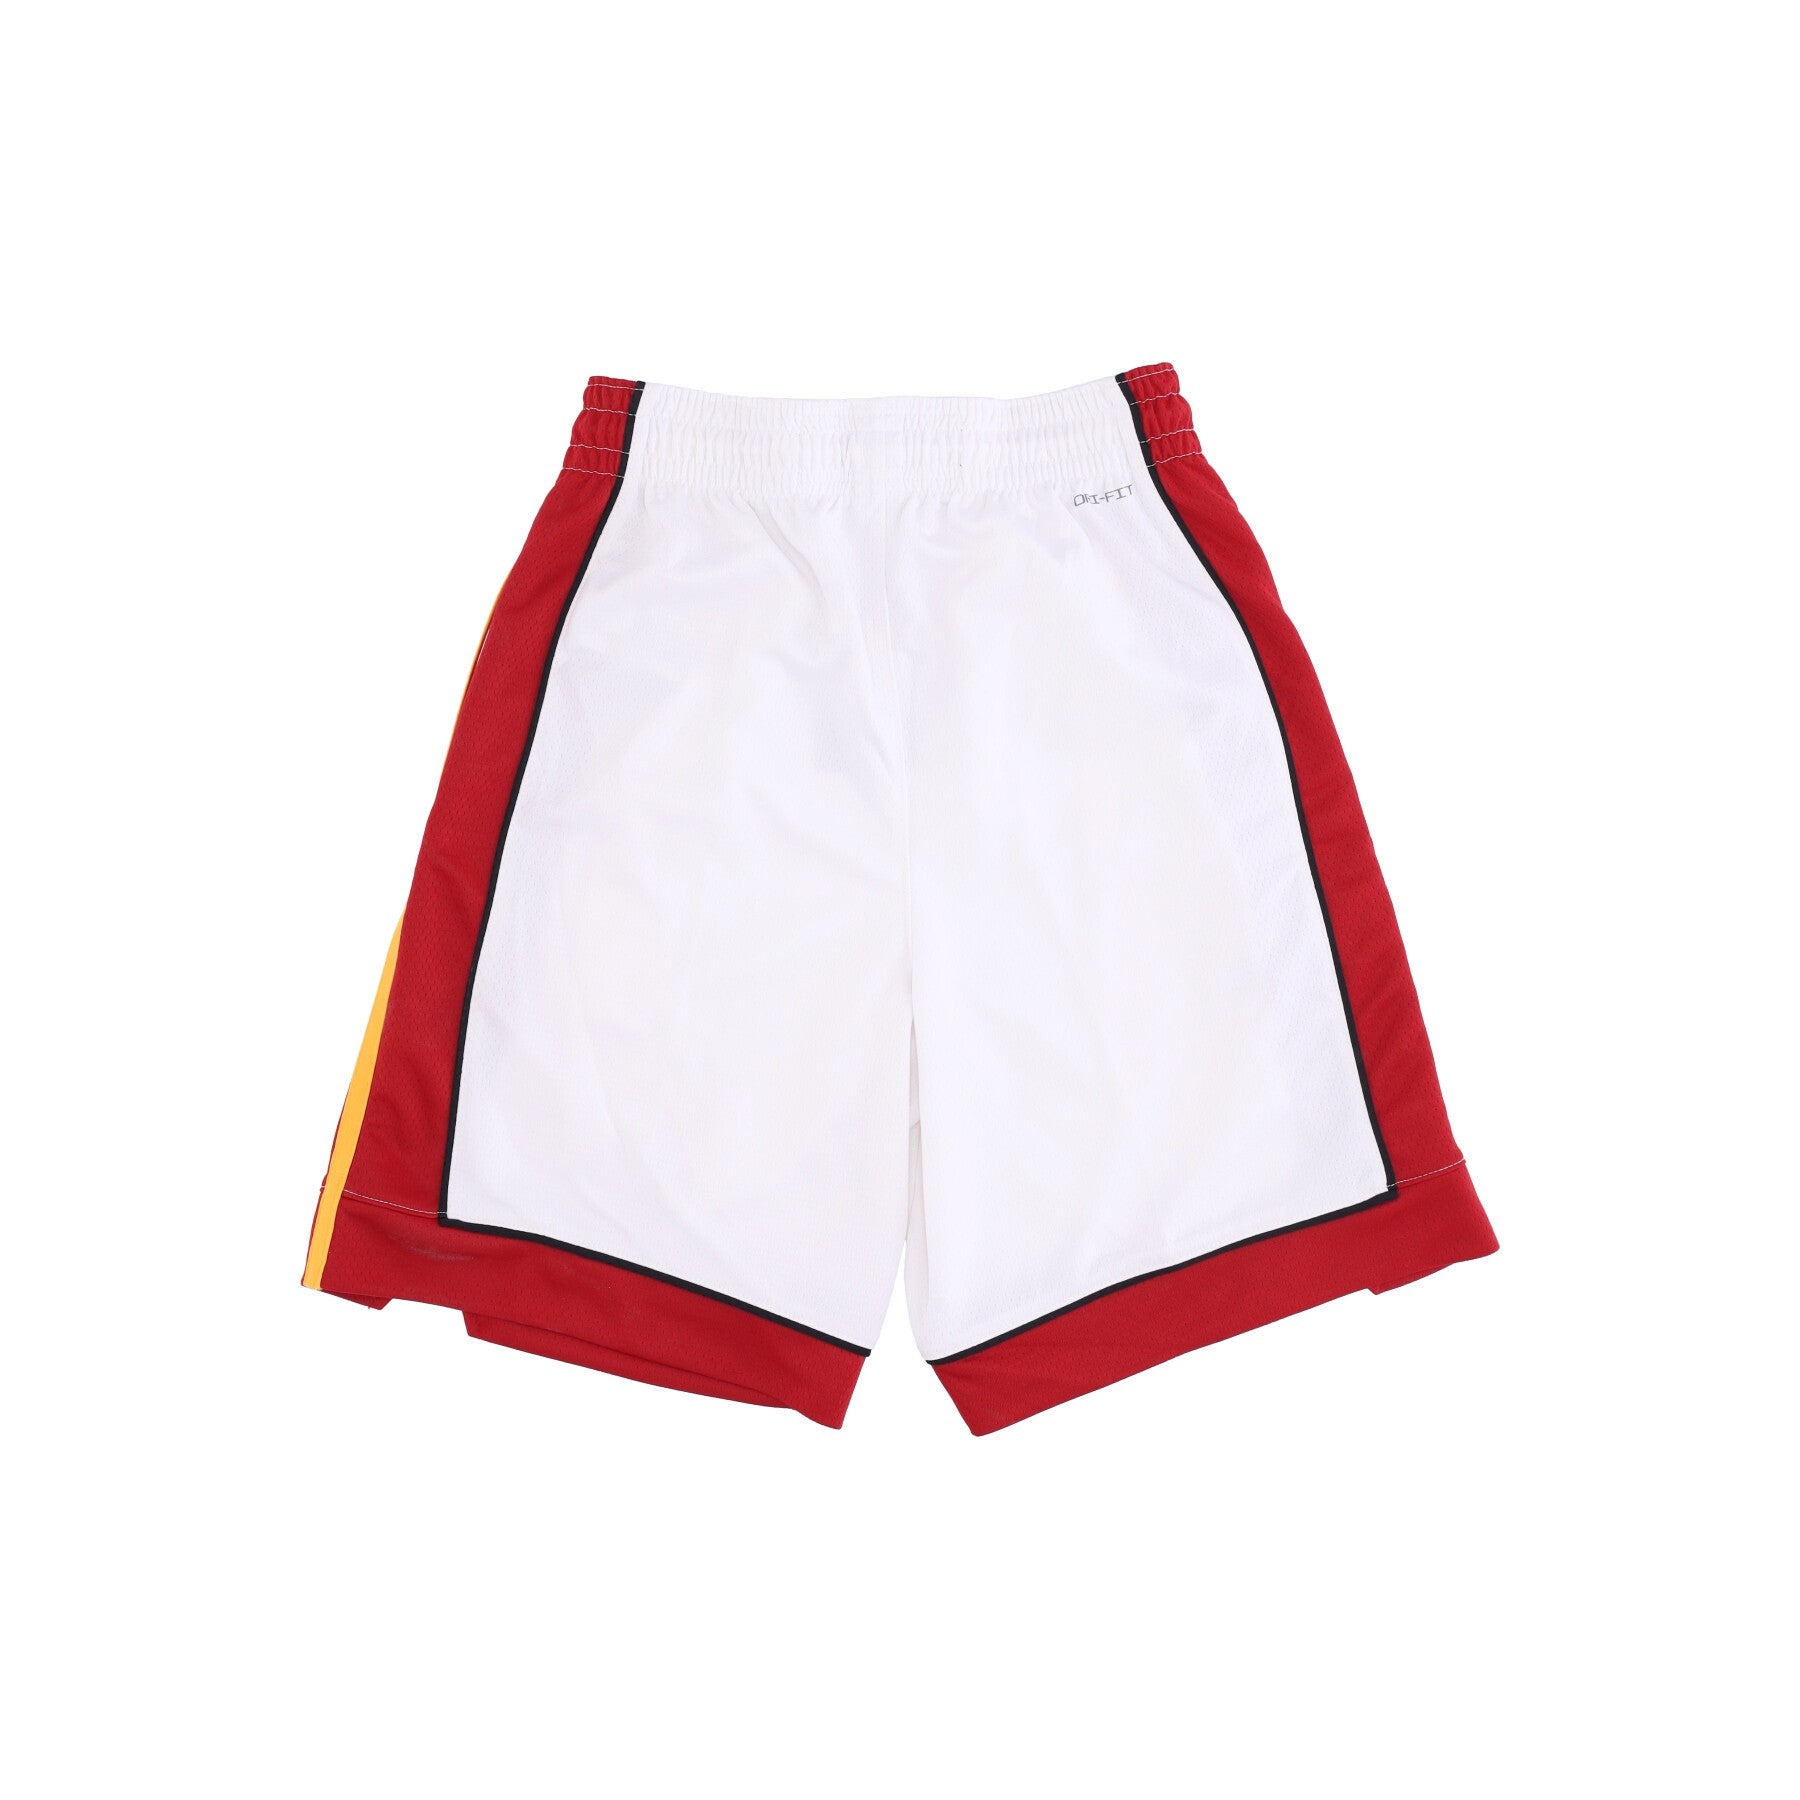 Men's Basketball Shorts Nba Dri-fit Swingman Short Asc 18 Miahea White/tough Red/tough Red